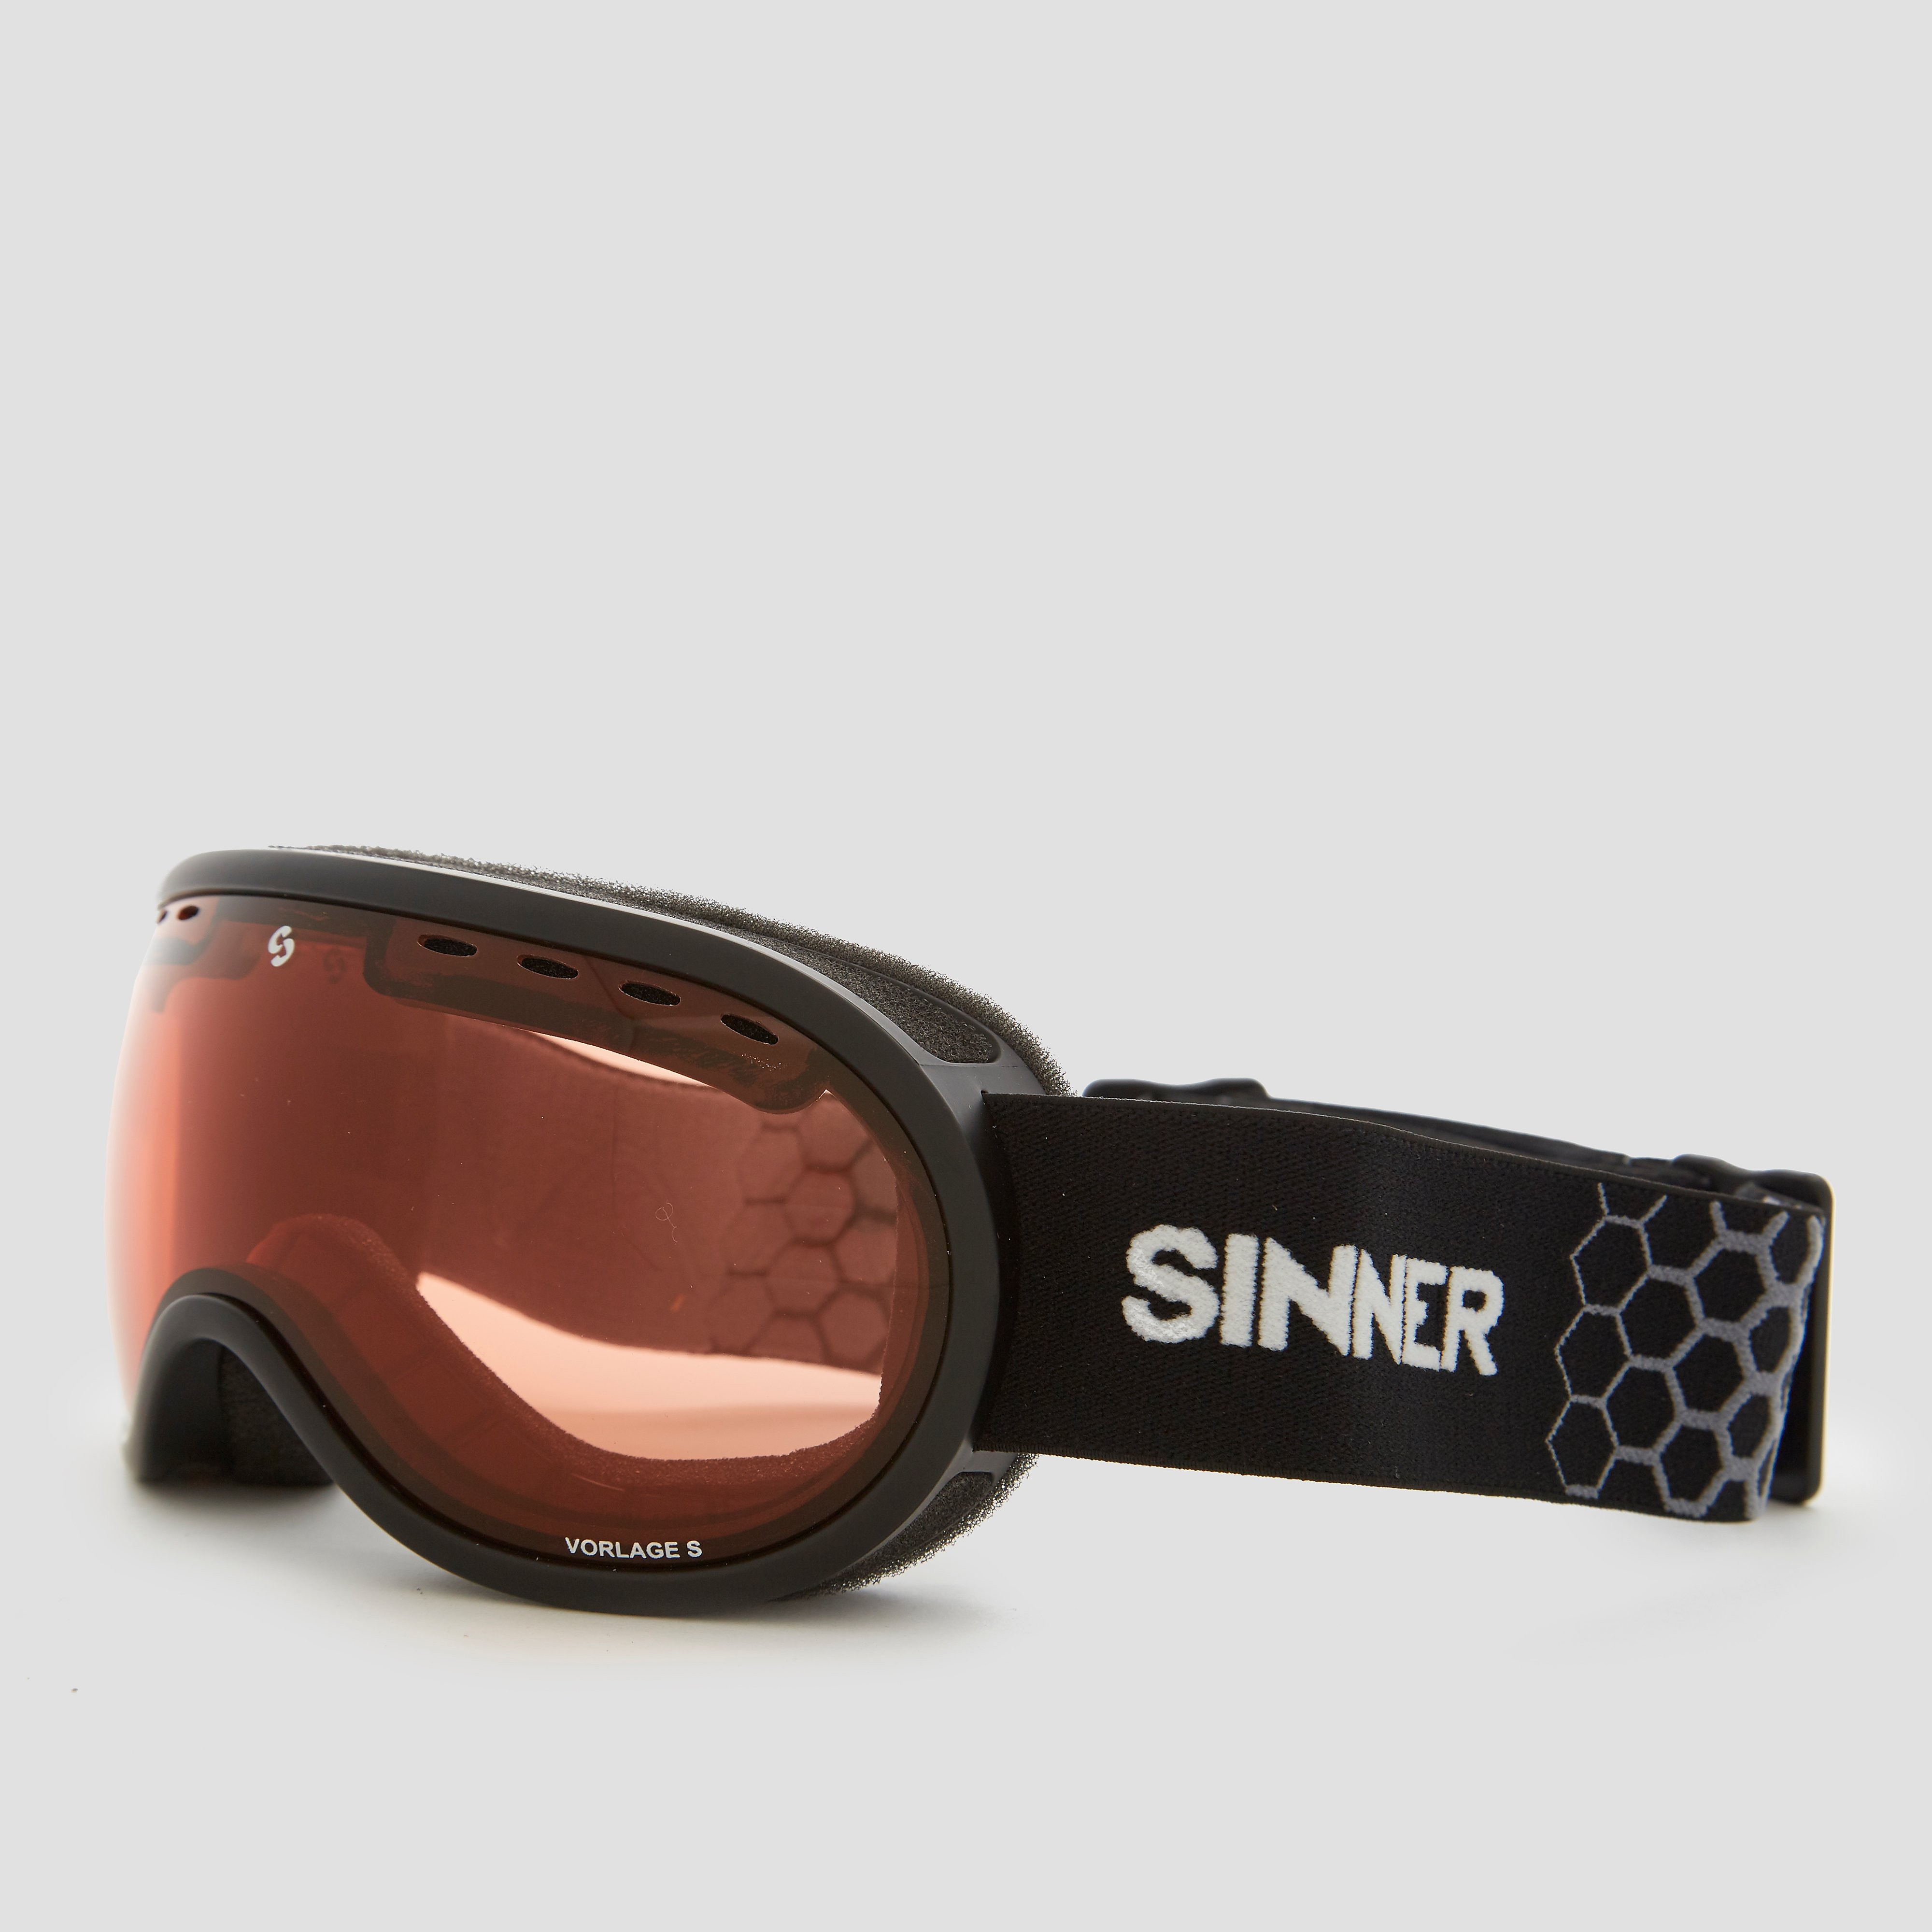 Sinner vorlage skibril zwart/oranje